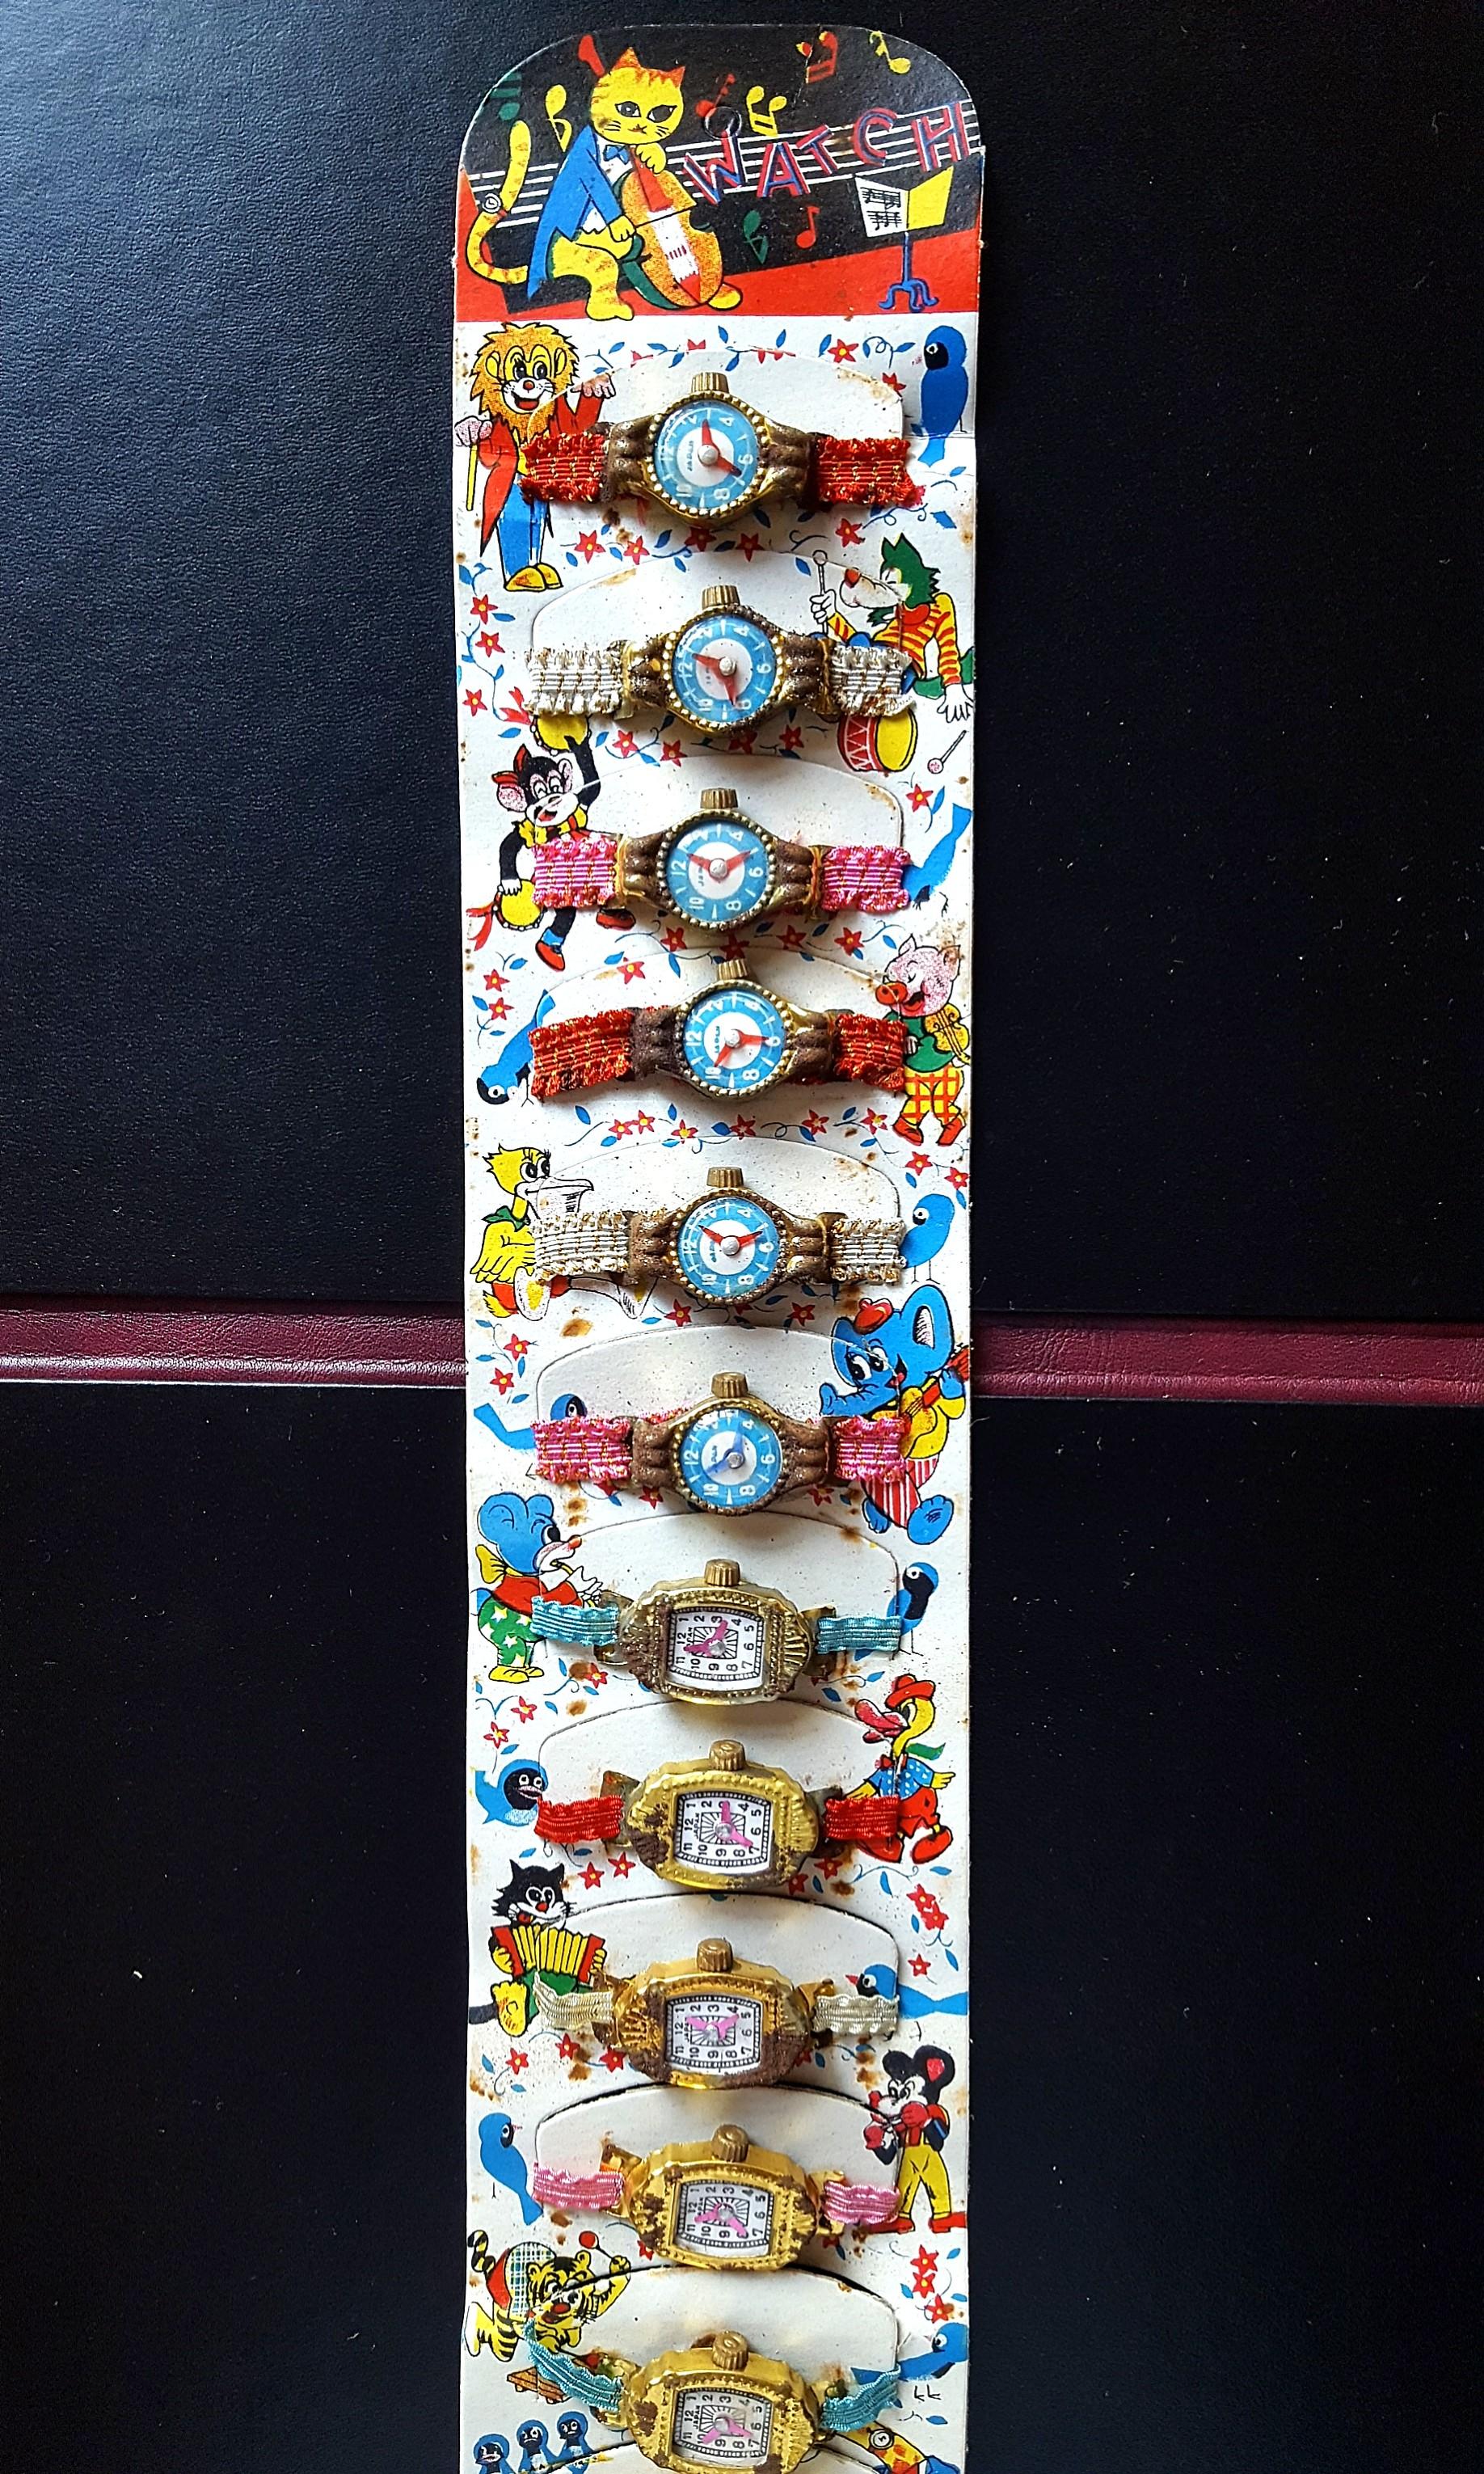 60至70年代懷舊玩具手錶 一版十二隻 指針可動 日本製造 玩具圖鑑介紹品 品相如圖 注意部分錶面有不同程度掉漆及生銹情況 古董收藏 古董收藏